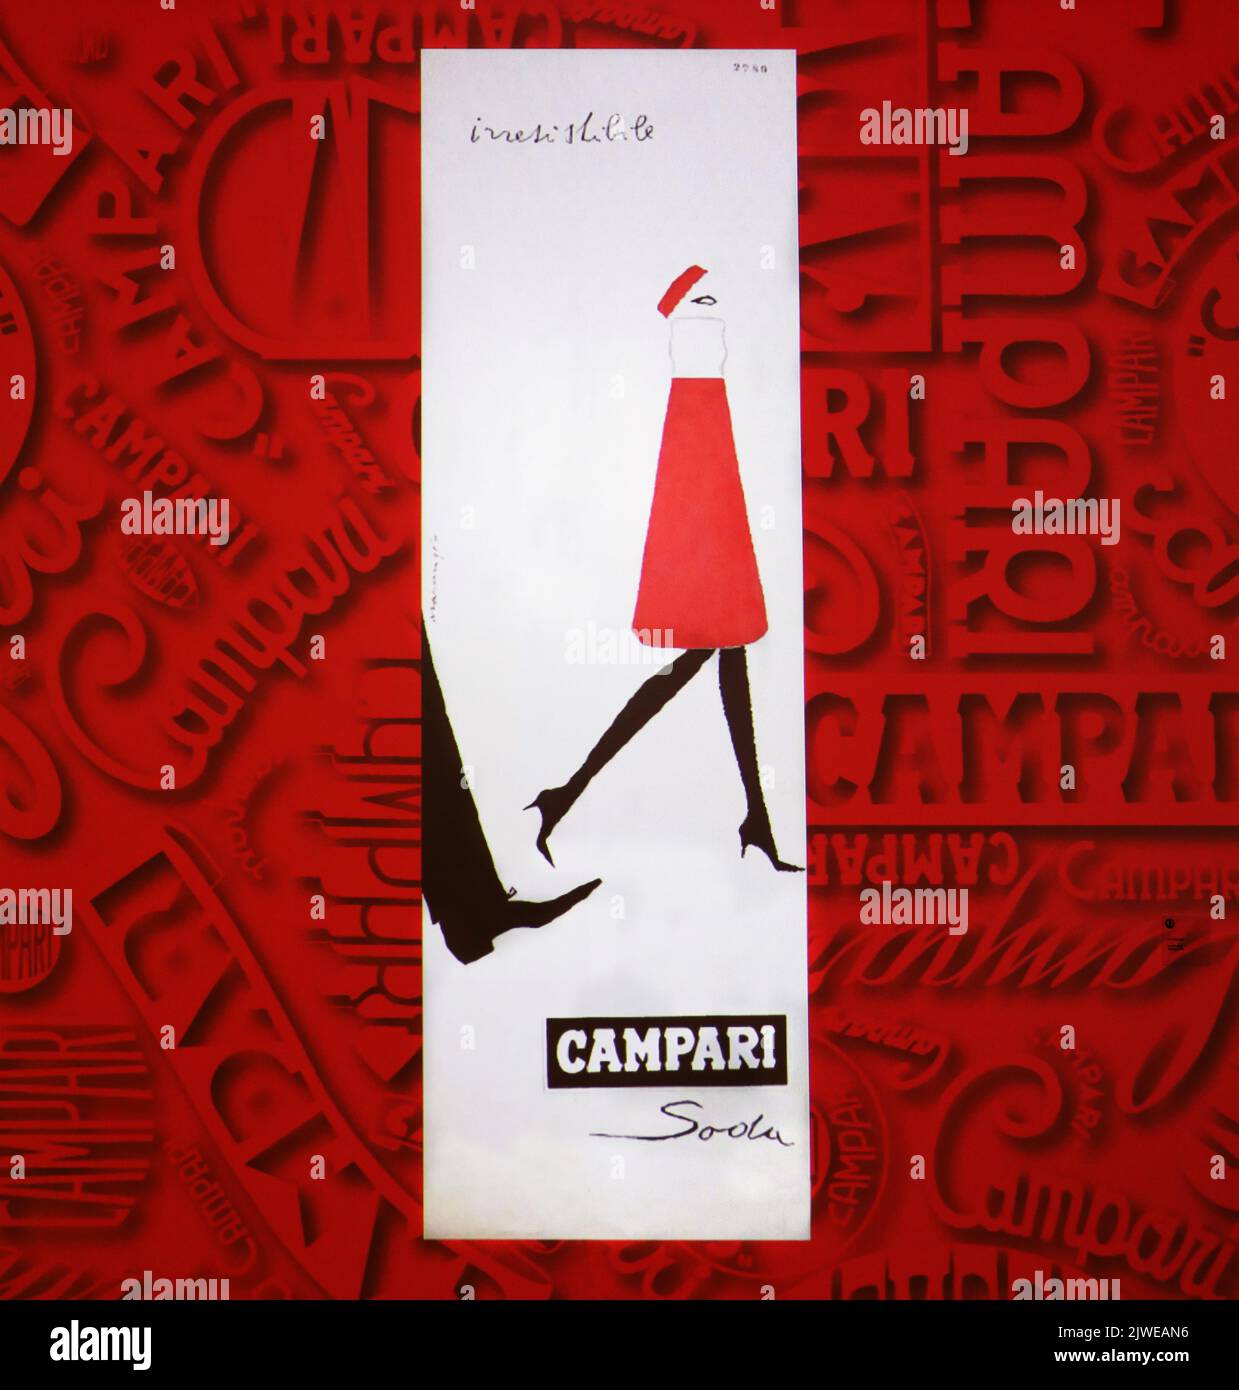 Pubblicità creativa vintage per Cordial Campari. Immagine scattata alla Galleria Campari vicino a Milano. Foto Stock